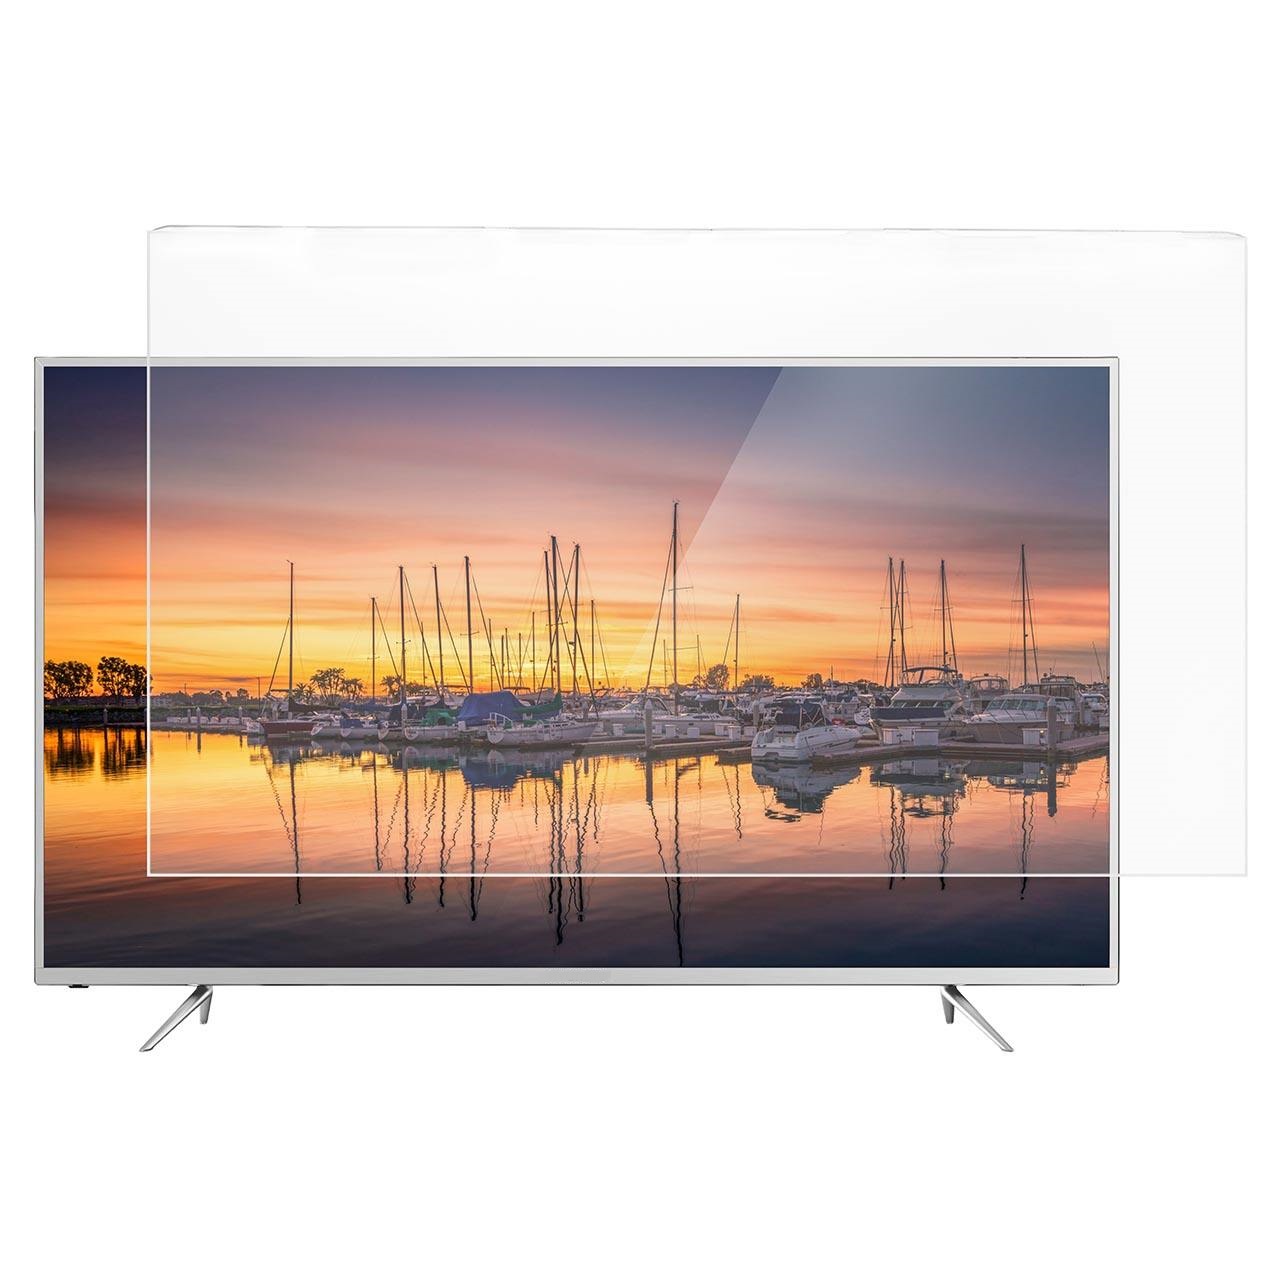 محافظ صفحه تلویزیون منحنی اس اچ مدل S_55-8995 مناسب برای تلویزیون سامسونگ 55 اینچ منحنی مدلهای 8995 و Q78